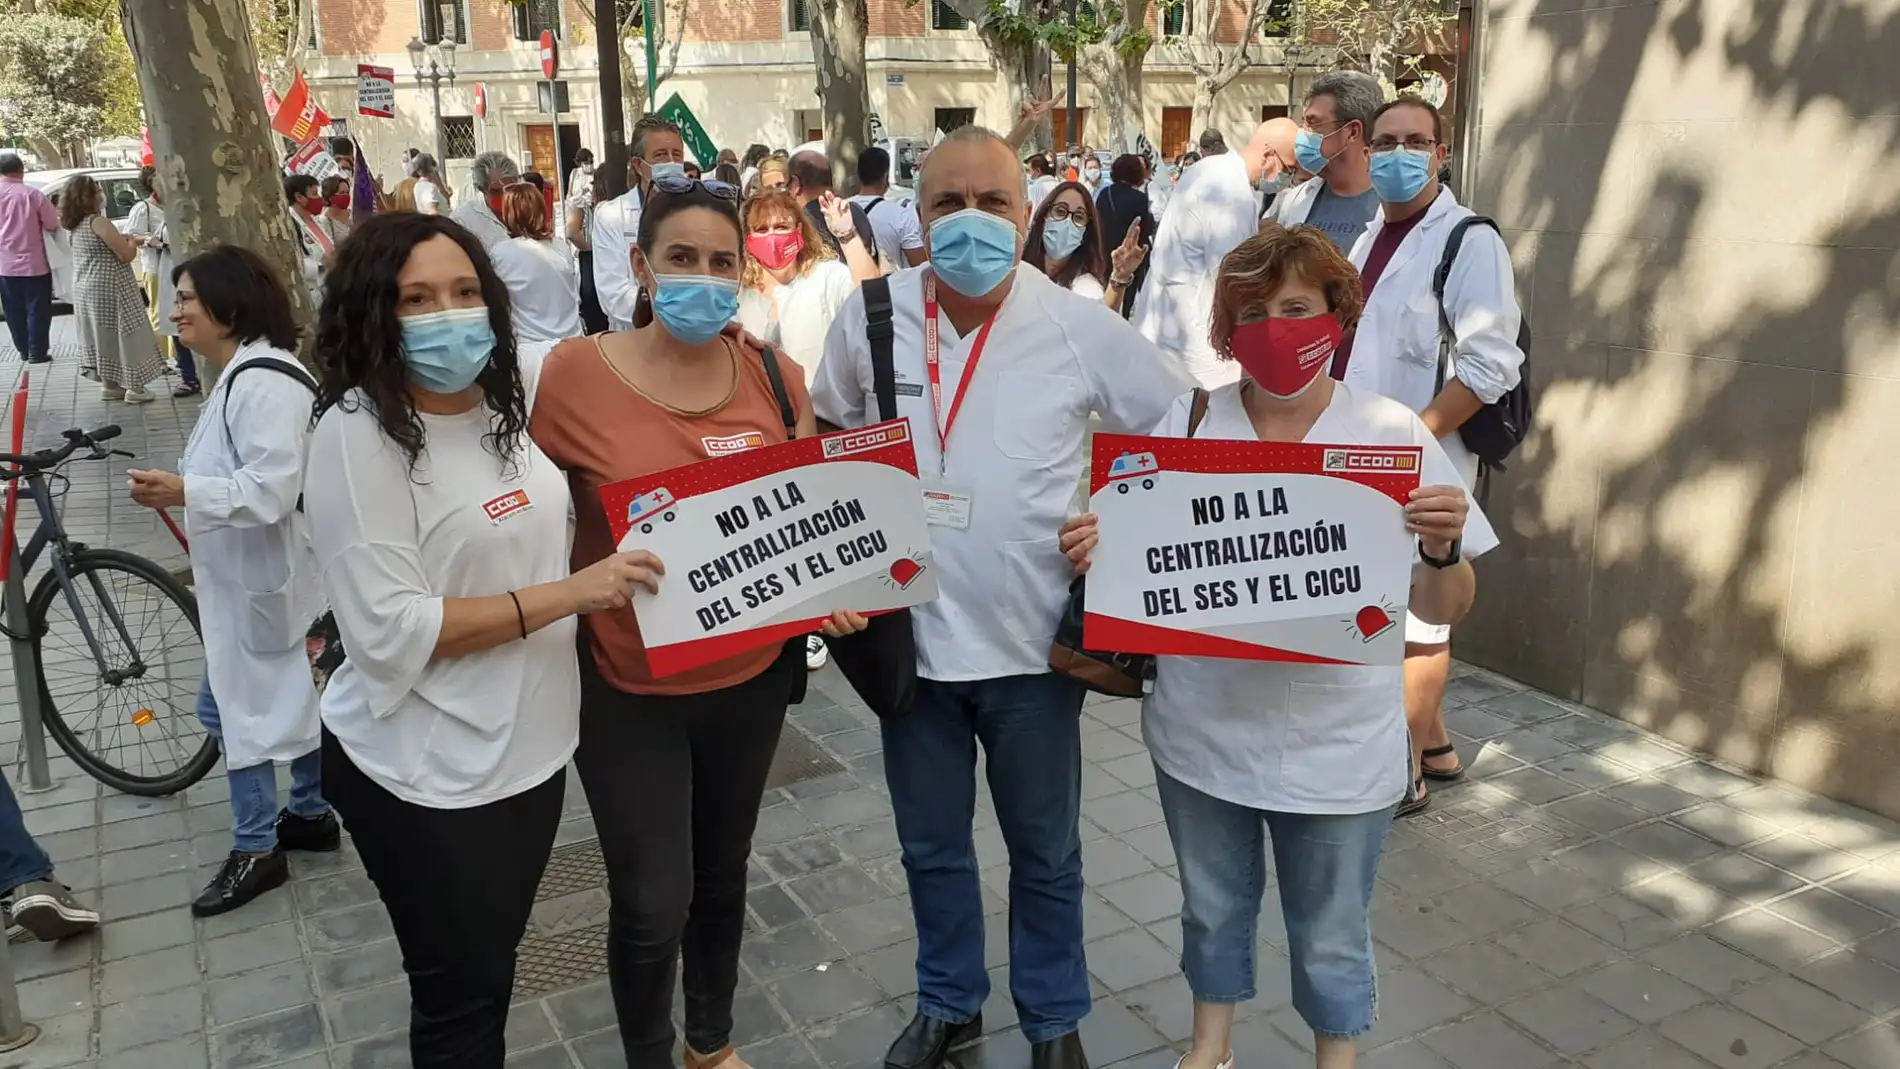 Paco Tébar, delegado de Sanidad de CCOO en la comarca, junto a unas trabajadoras durante en una protesta contra la centralización en Valencia de los servicios de emergencias sanitarias